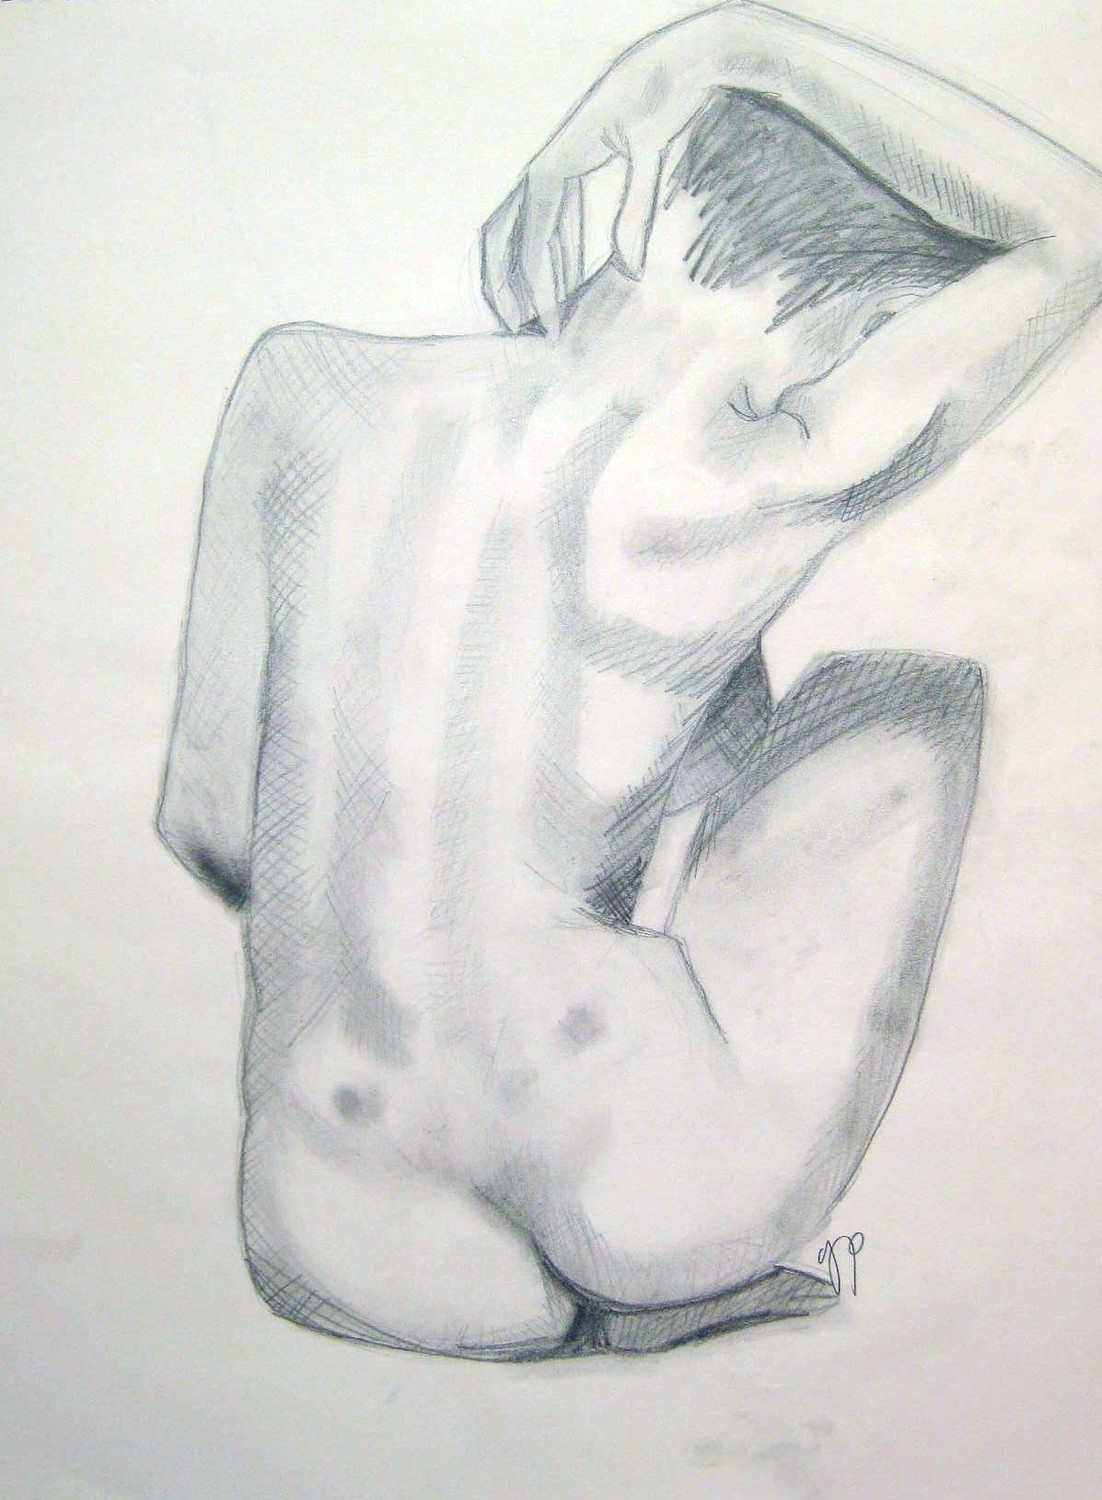 Erotic drawings 20